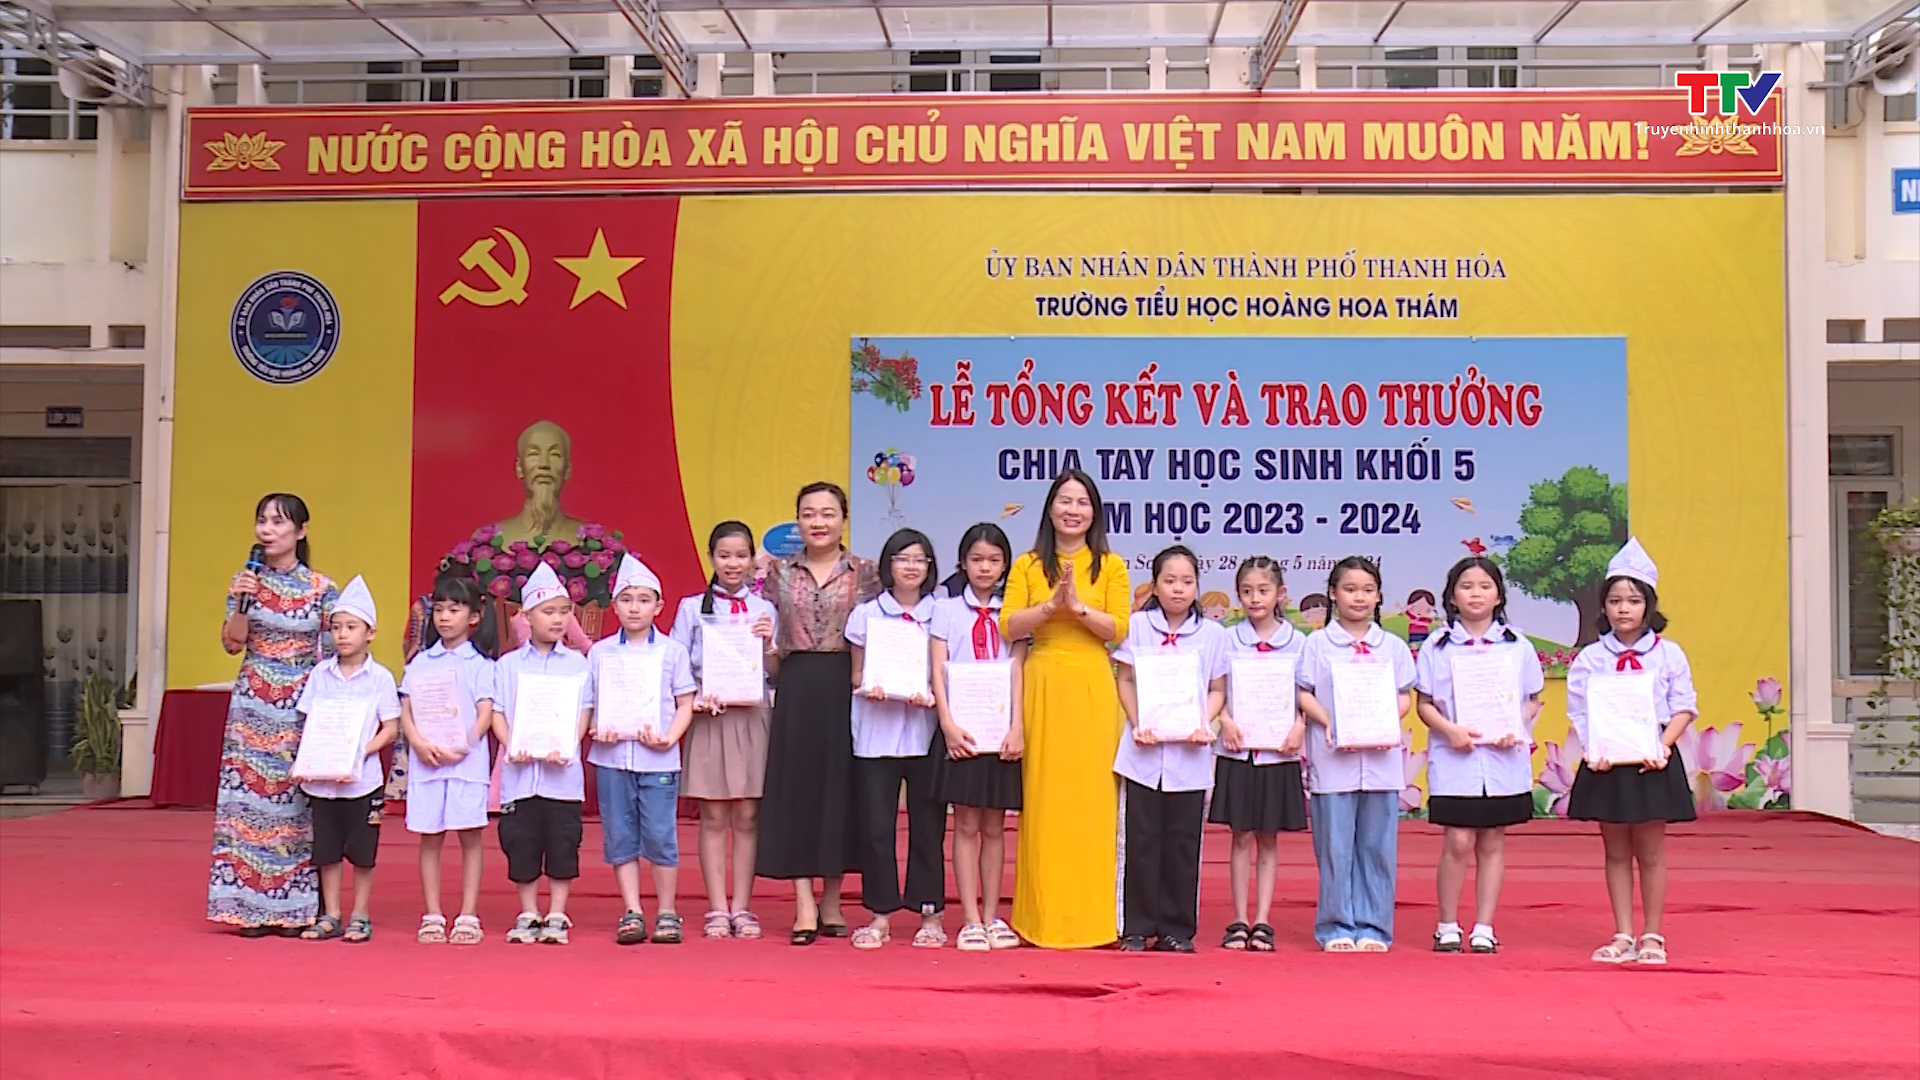 Tin tổng hợp hoạt động chính trị, kinh tế, văn hóa, xã hội trên địa bàn thành phố Thanh Hóa ngày 29/5/2024- Ảnh 4.